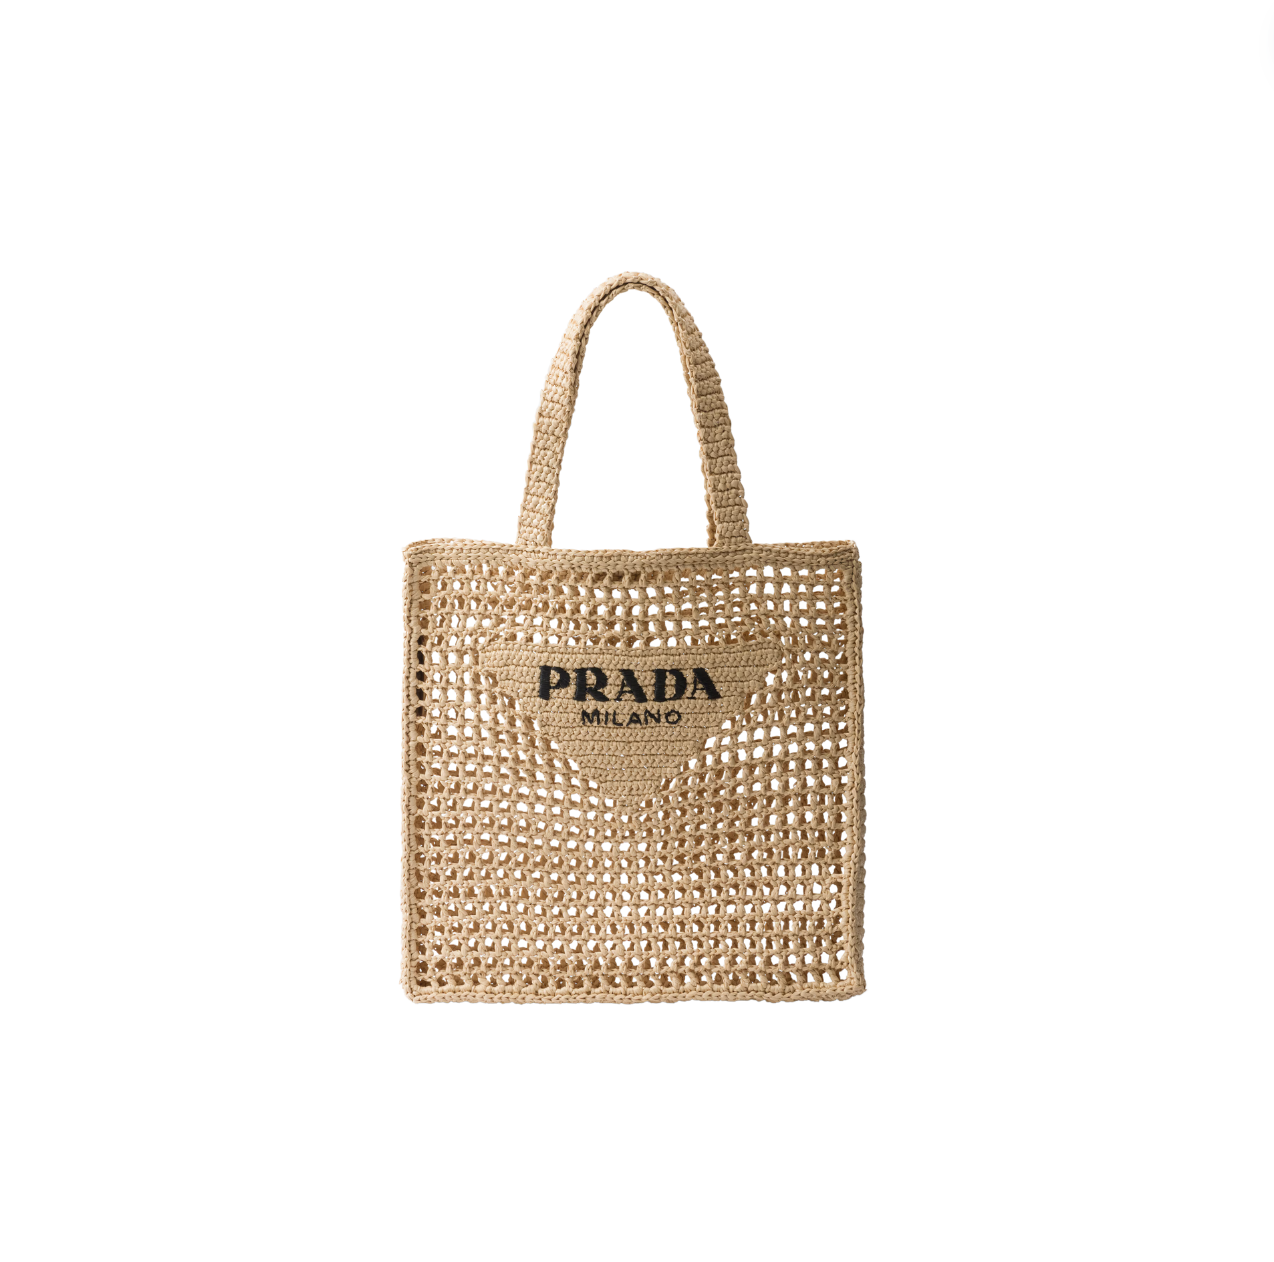 save vs splurge - Prada beach bag - glambytes